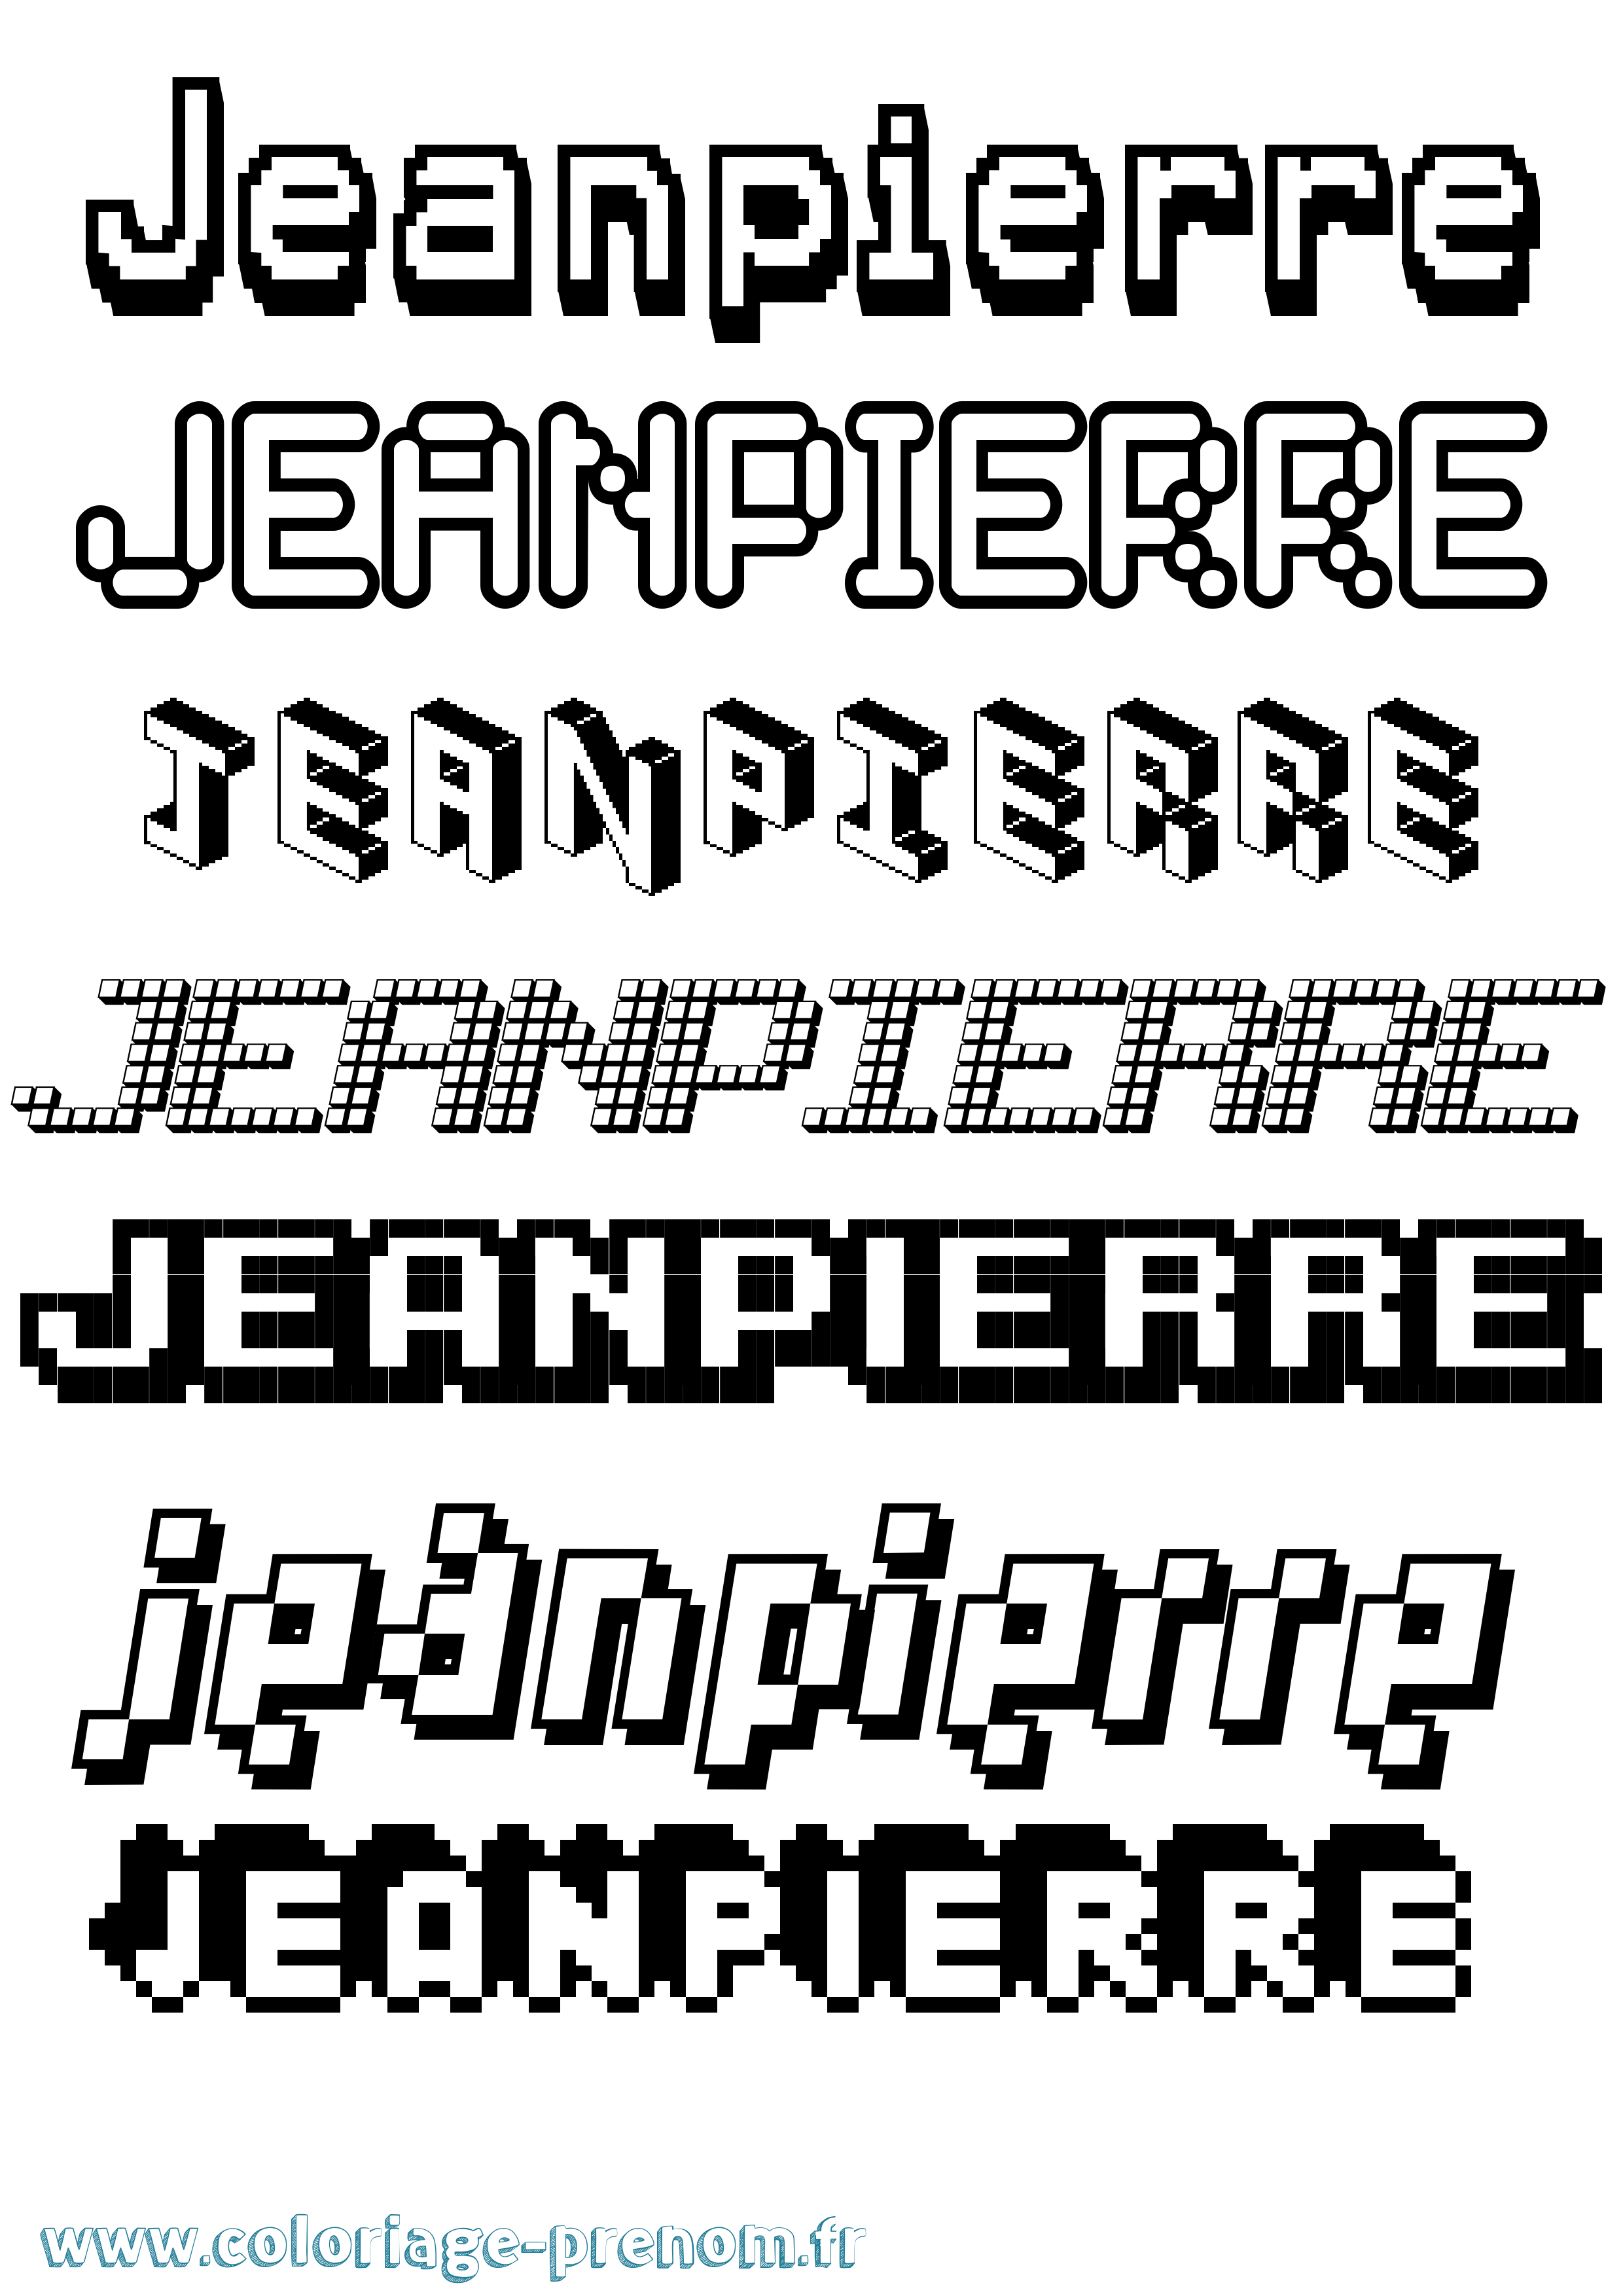 Coloriage prénom Jeanpierre Pixel